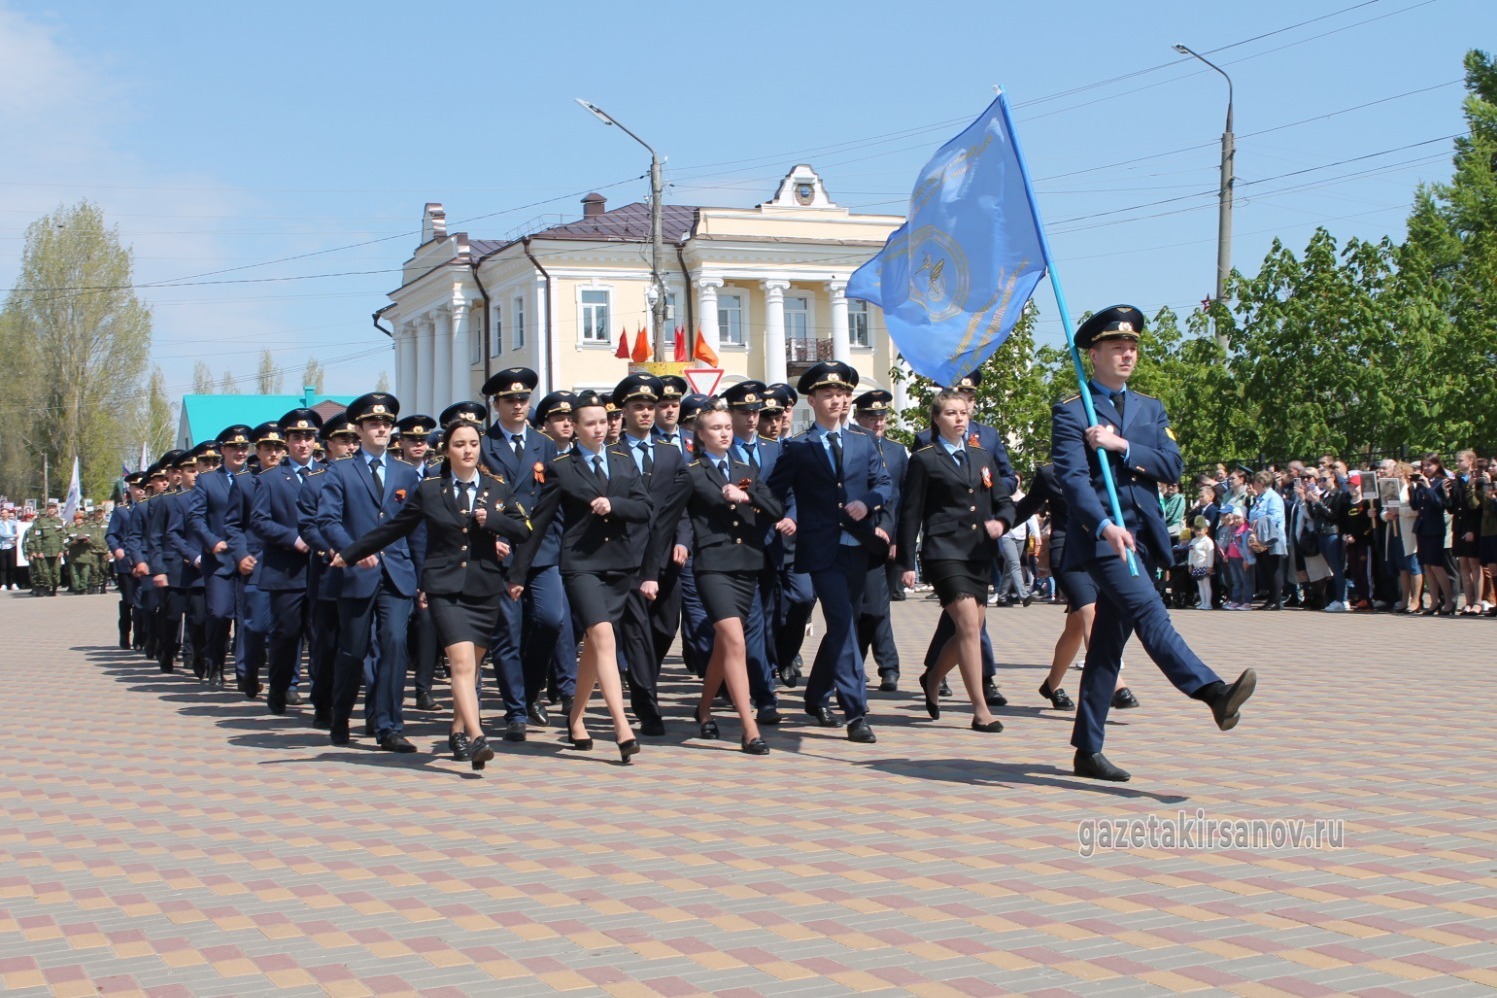 Колонна колледжа гражданской авиации на Параде Победы в Кирсанове